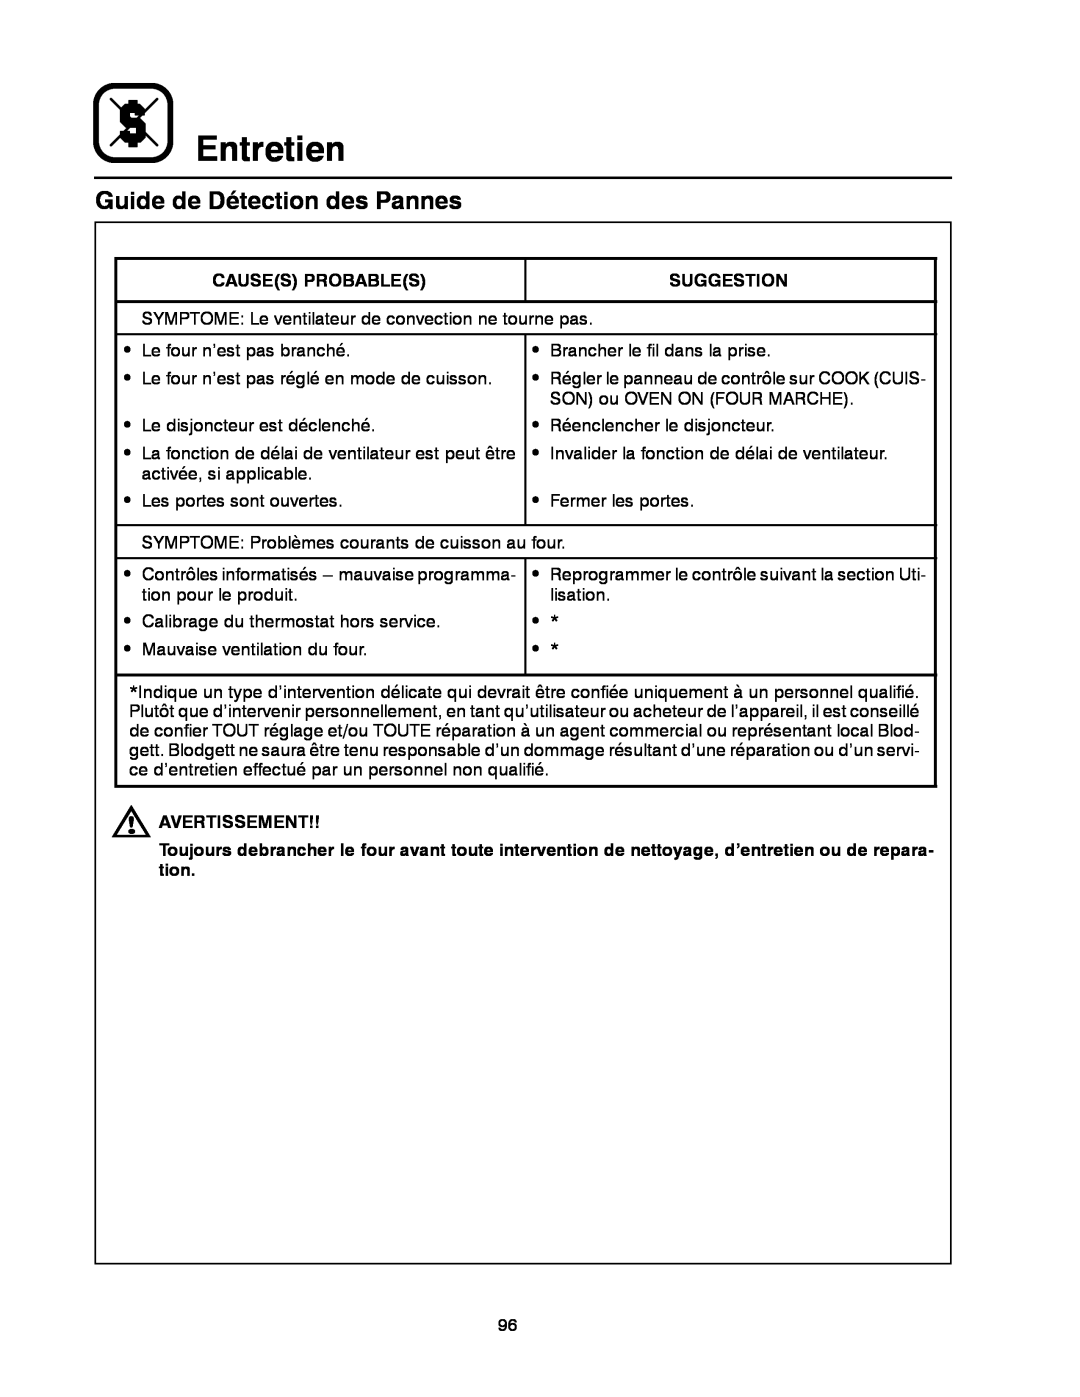 Blodgett DFG-200, DFG-100 manual Guide de Détection des Pannes, Entretien 